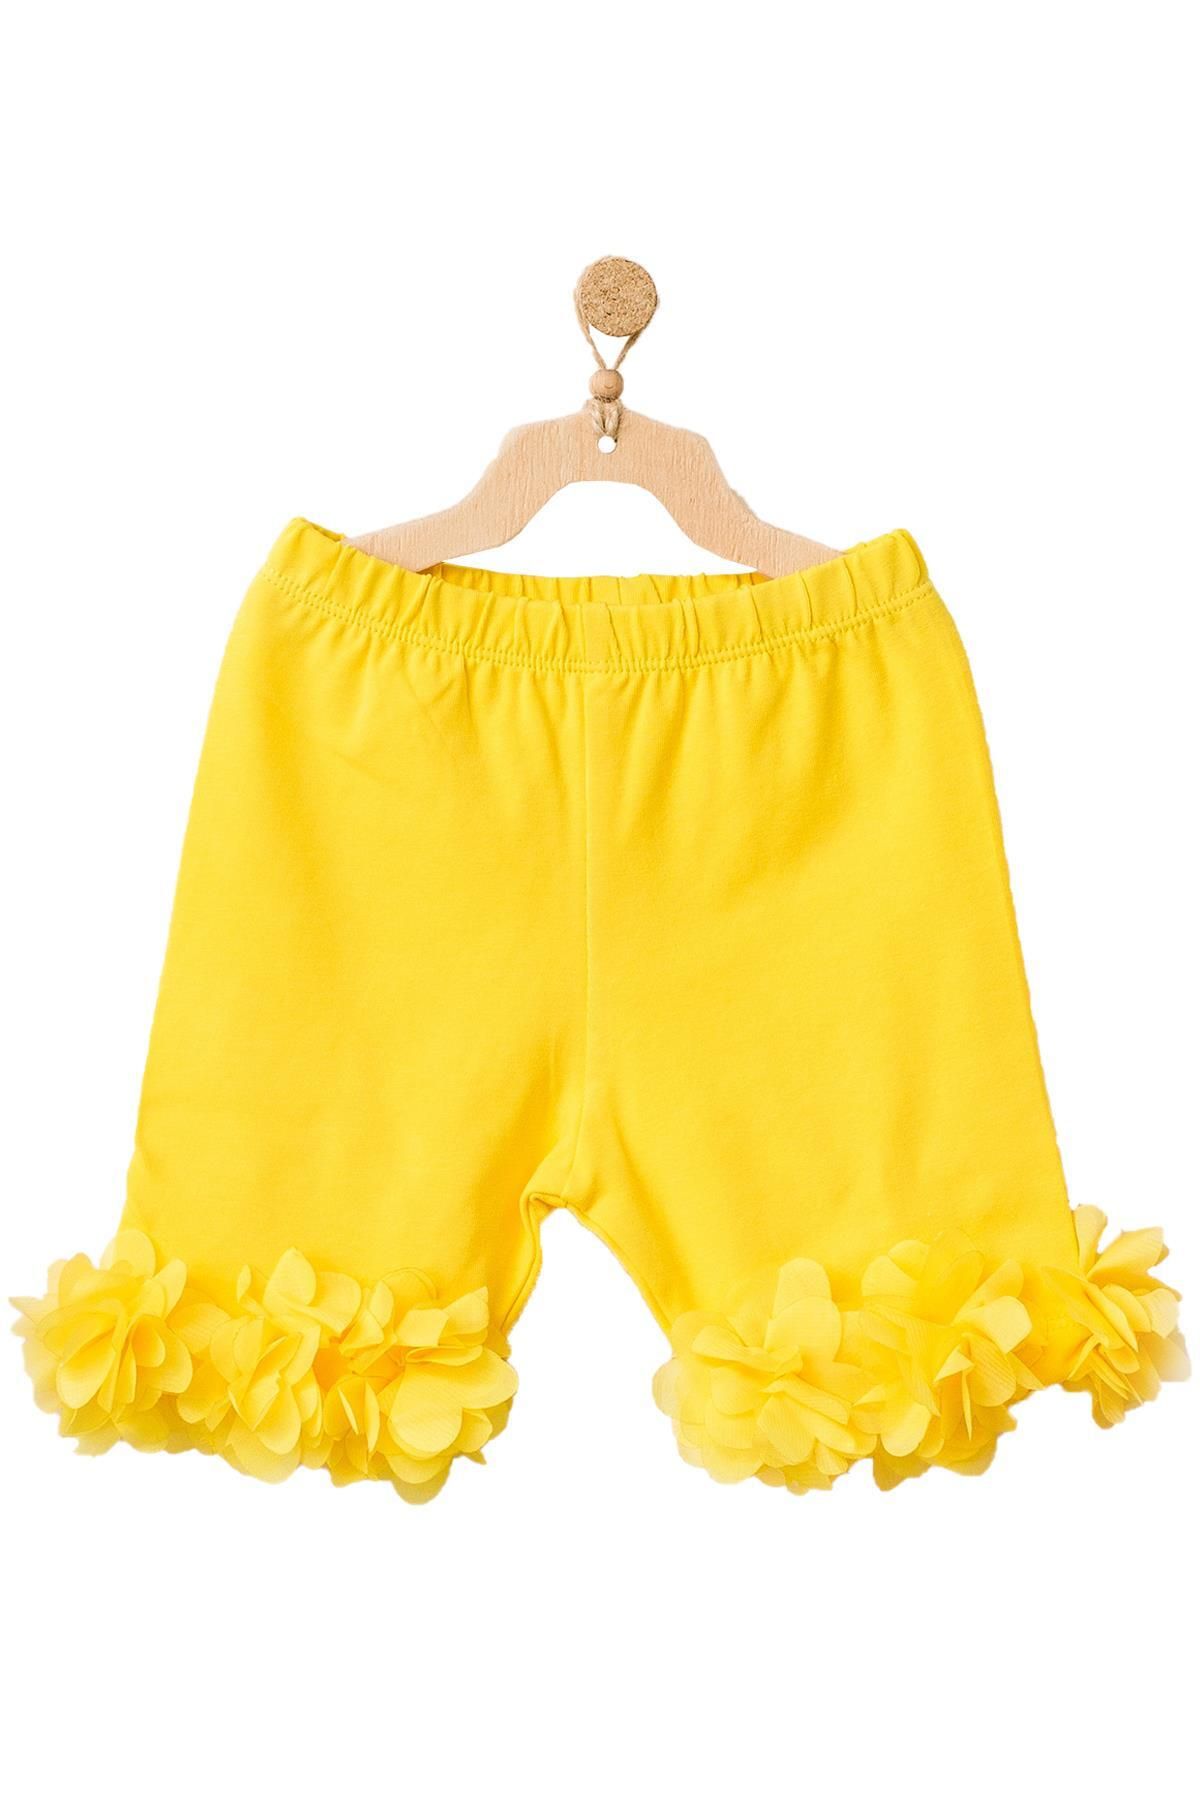 Andy Wawa Kız Bebek Paçaları Tüllü Sarı Renk Şort Ac21849r